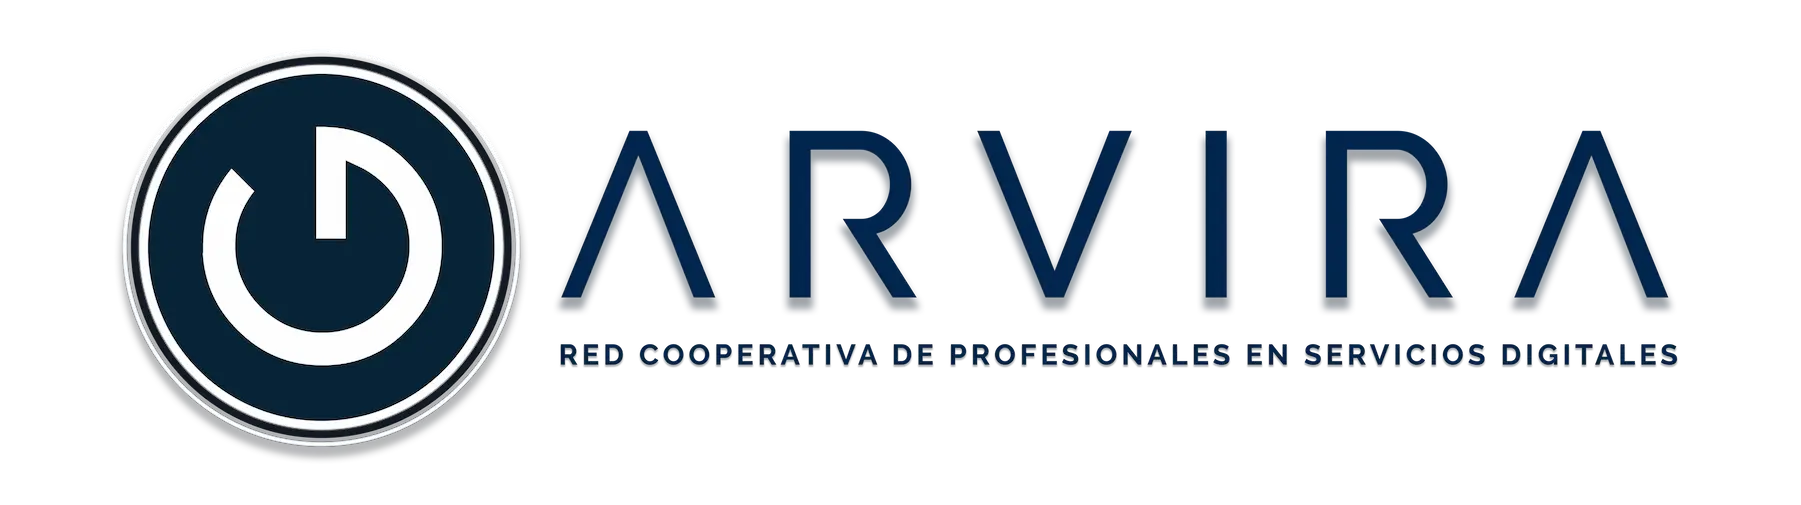 Logo de Garvira & Partners, cooperativa digital líder en marketing y tecnología